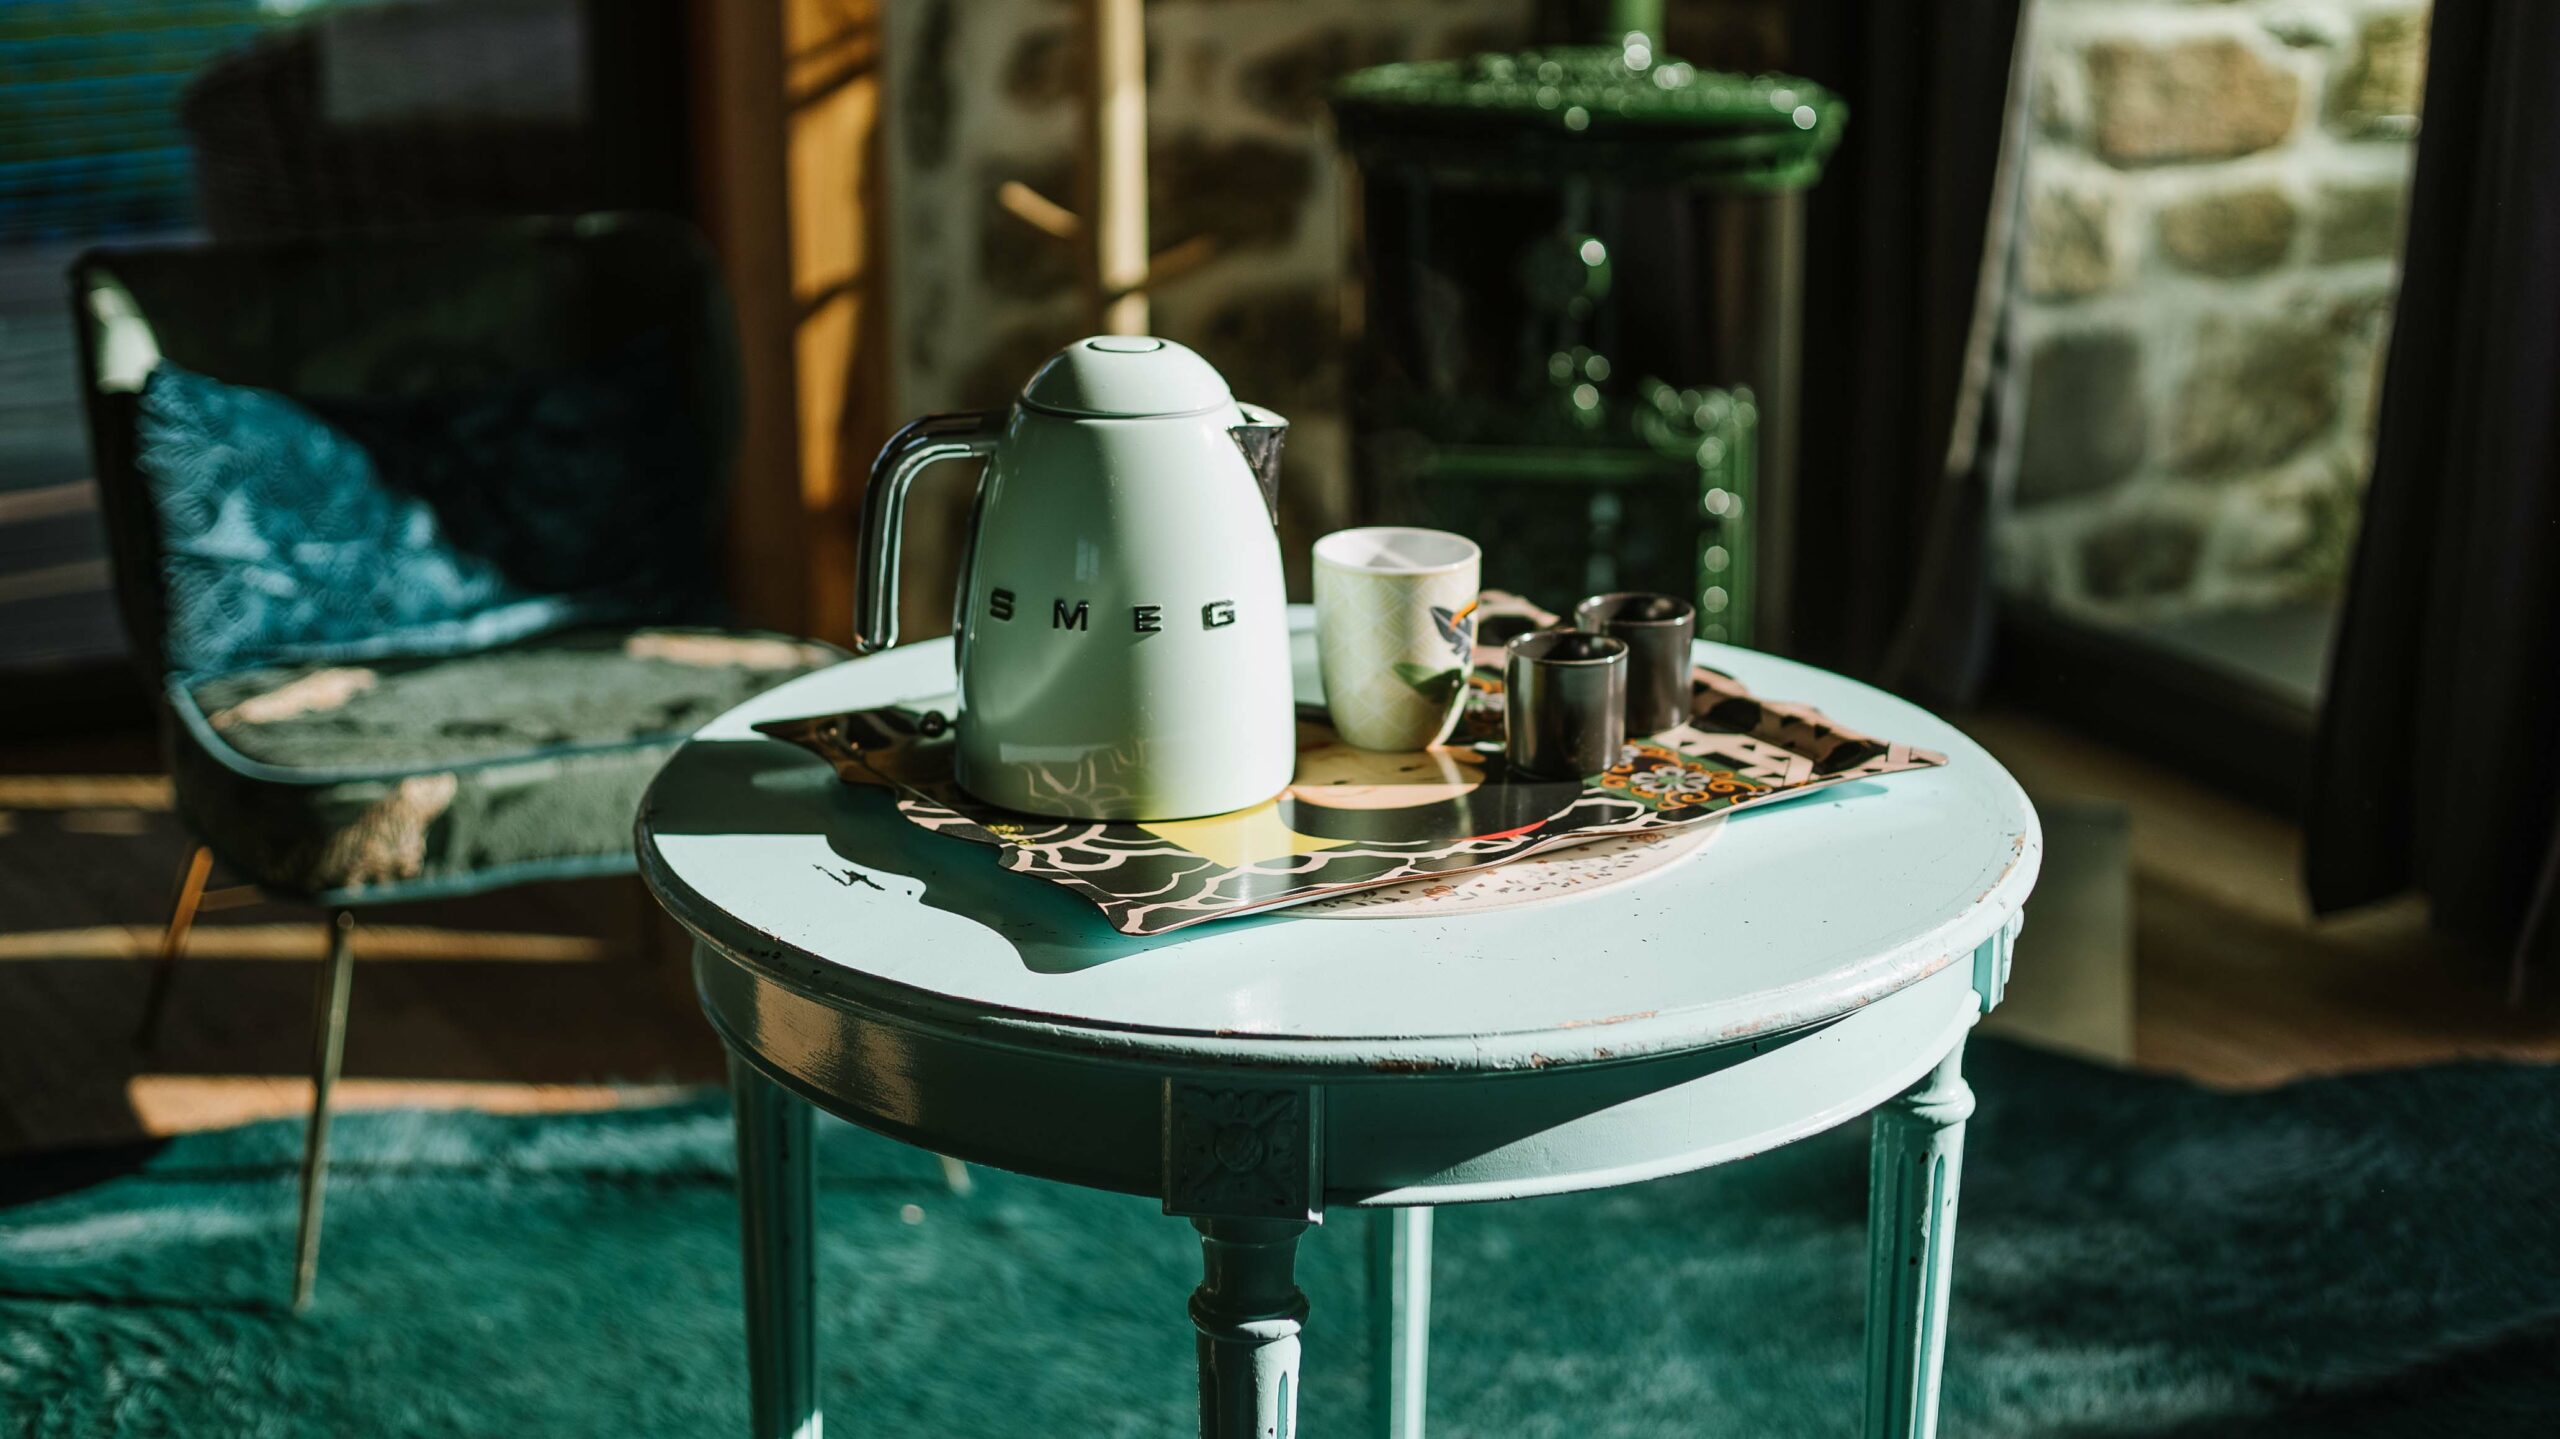 Une bouillore smeg vert pastel posée sur une table avec son thé